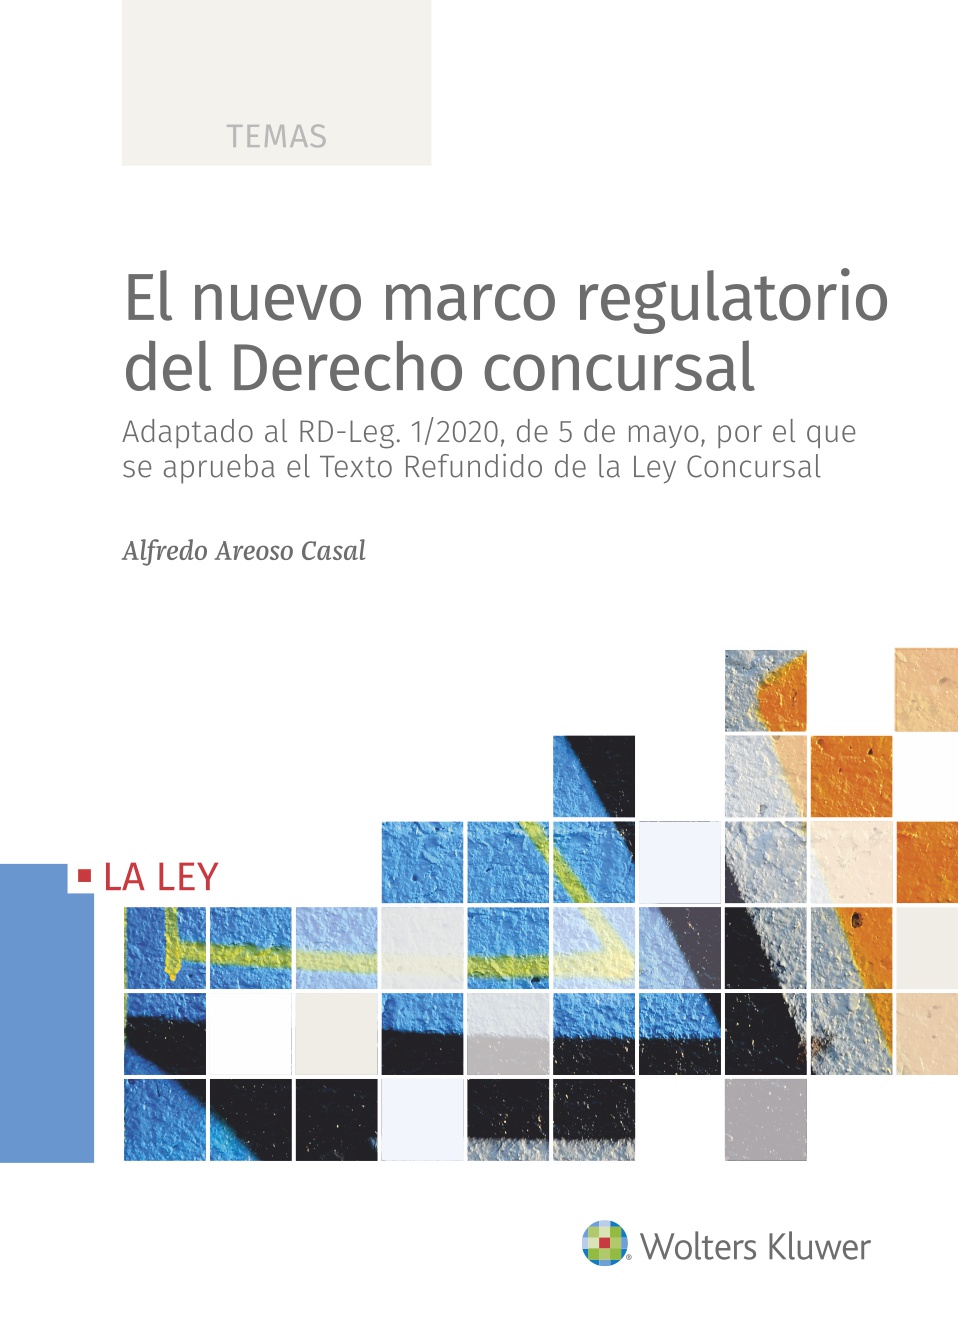 El nuevo marco regulatorio del derecho concursal   «Adaptado al RD-Leg. 1/2020, de 5 de mayo, por el que se aprueba el Texto Refundido de la Ley Concursal»